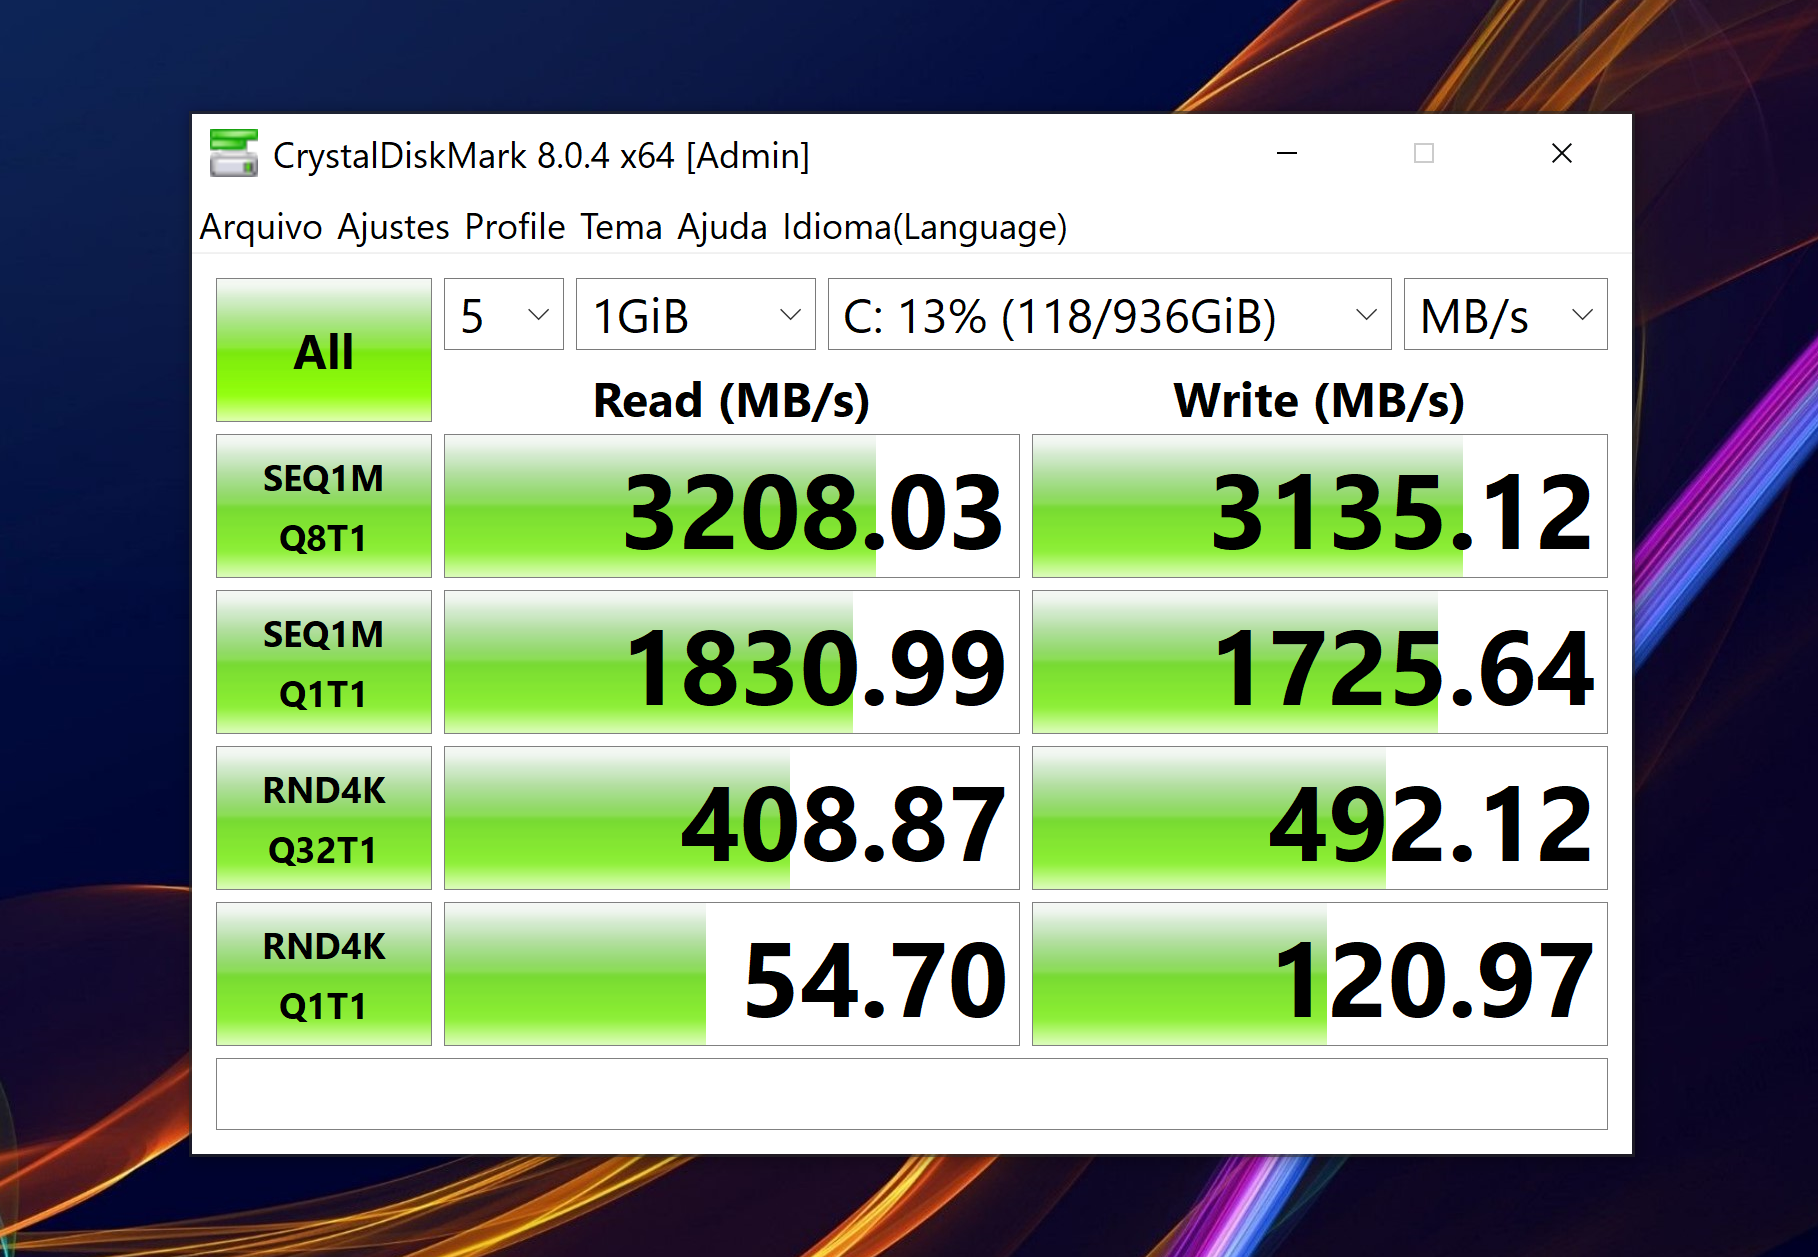 SSD de alto desempenho no Dell XPS 13 - Imagem: Fábio Jordan/Canaltech